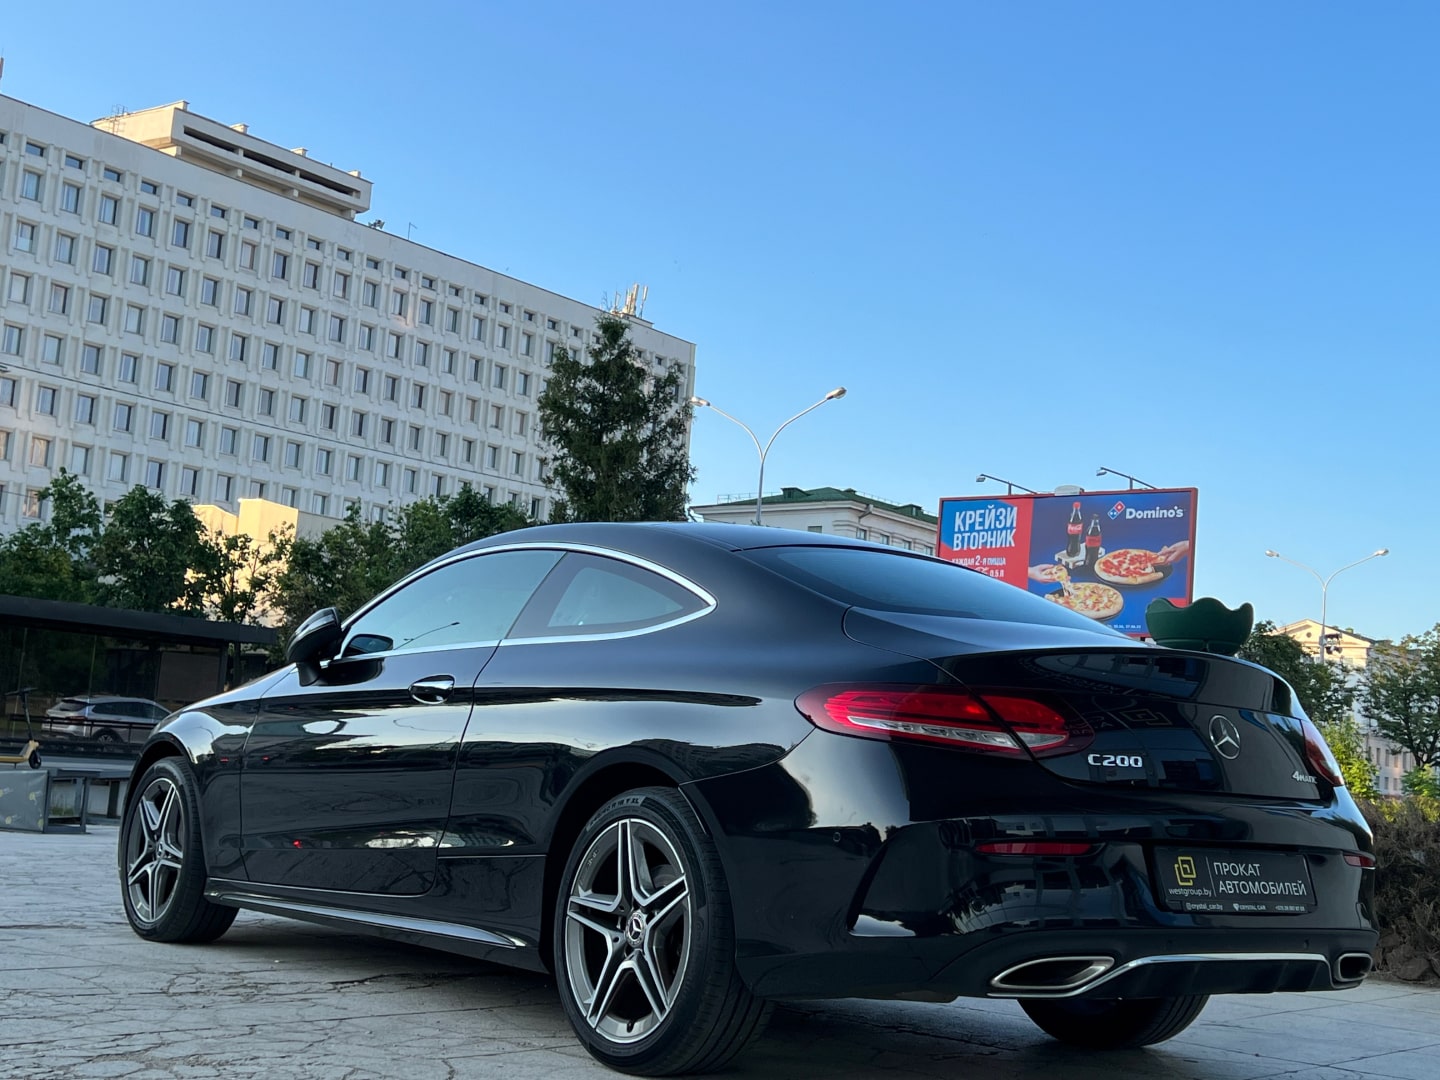 Аренда  Mercedes-benz C-class Coupe W205 C200 4MATIC Premium  3 класса 2018 года в городе Минск от 155 $/сутки,  двигатель: Бензин , объем 2.0 литров, КАСКО (Мультидрайв), без водителя, вид 1 - West Group